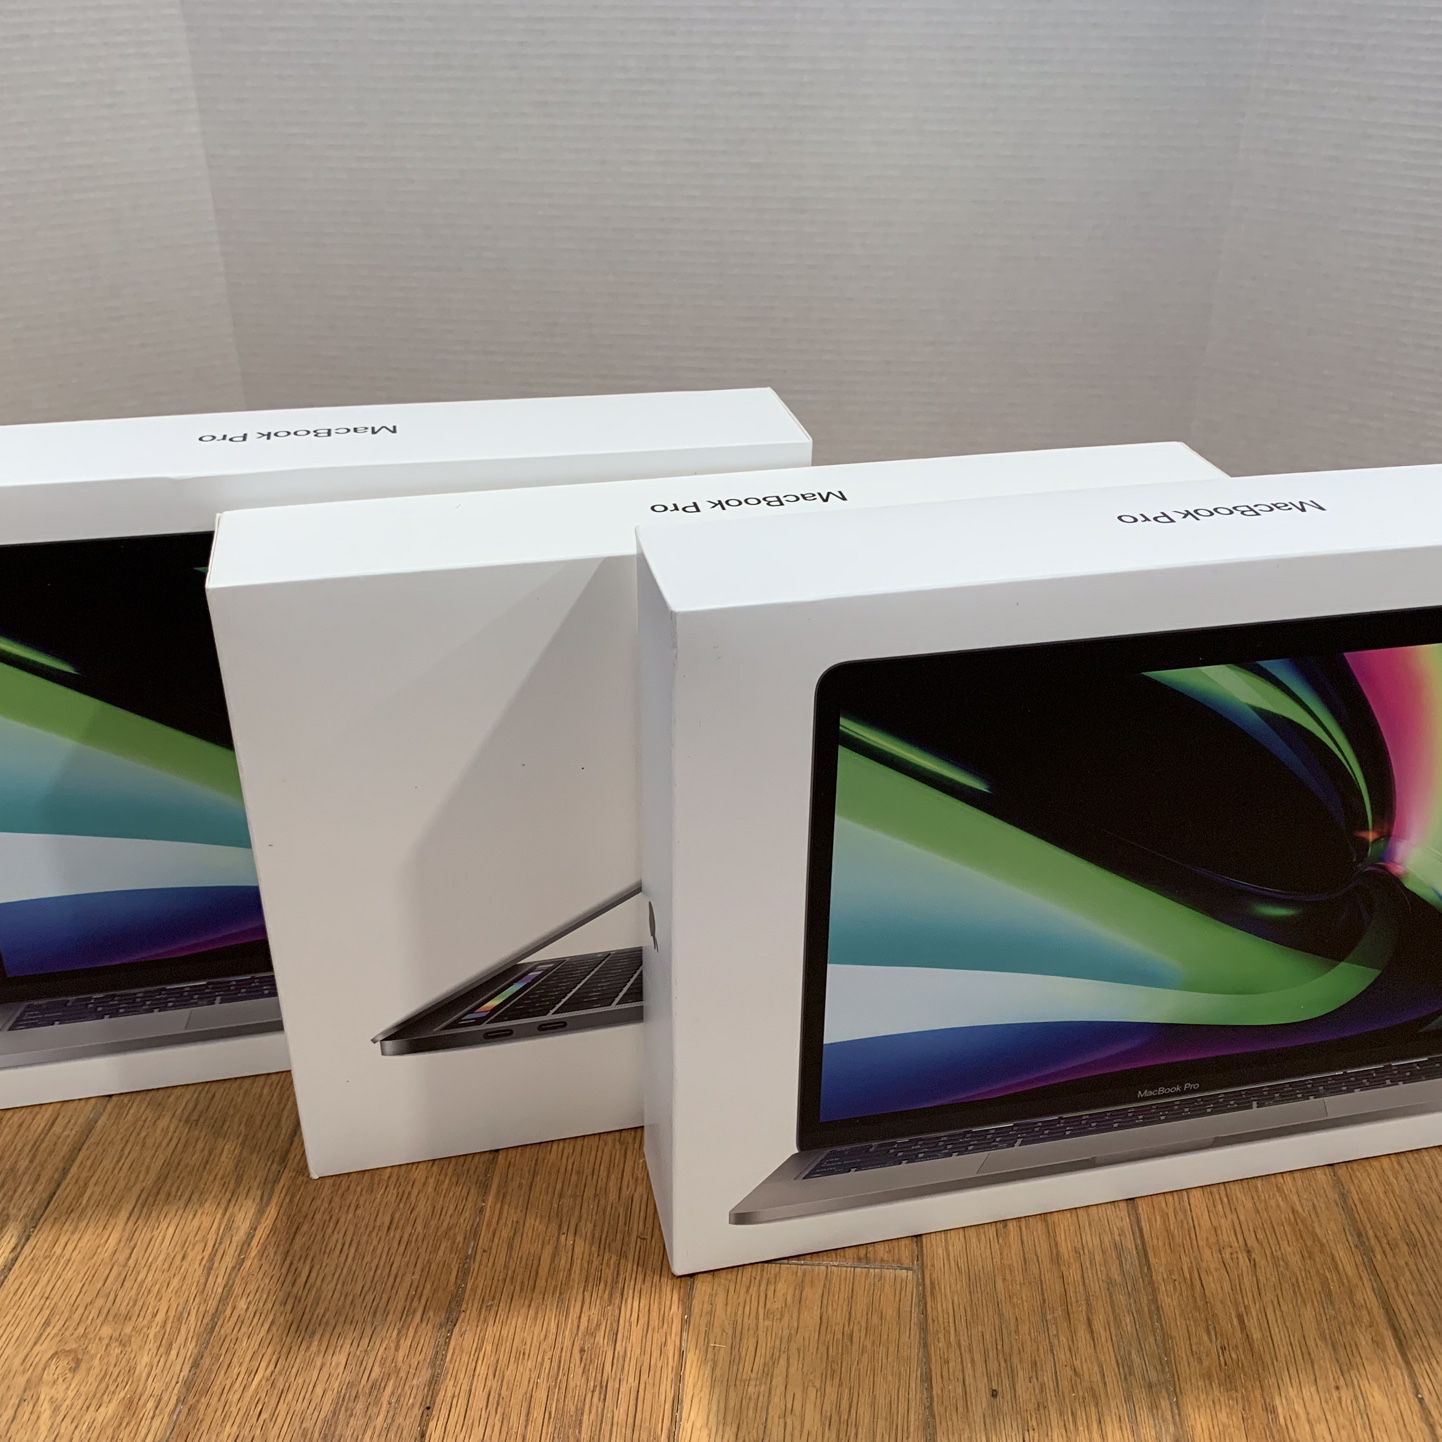 $520 each, i7/16GB RAM/256GB, Touch Bar 2019 MacBook Pro 13”, $2338 each org. retail